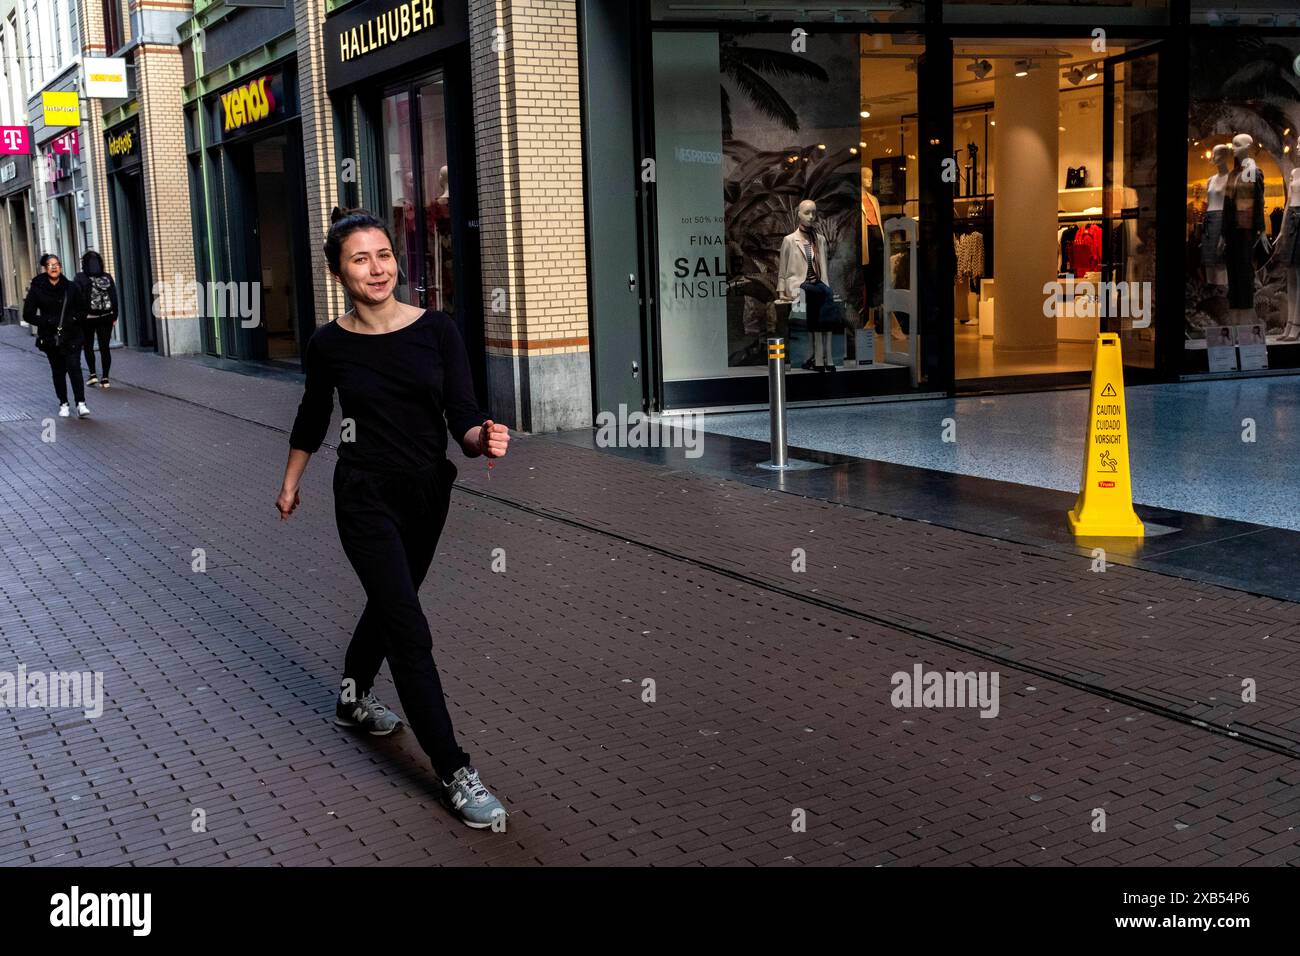 Frauen gehen die Straße runter Junge Frau geht die Straße mit einem schnellen Tempo entlang. Den Haag, Niederlande. Den haag, s-Gravenhage lange Poten Zuid-Holland Nederland Copyright: XGuidoxKoppesxPhotox Stockfoto